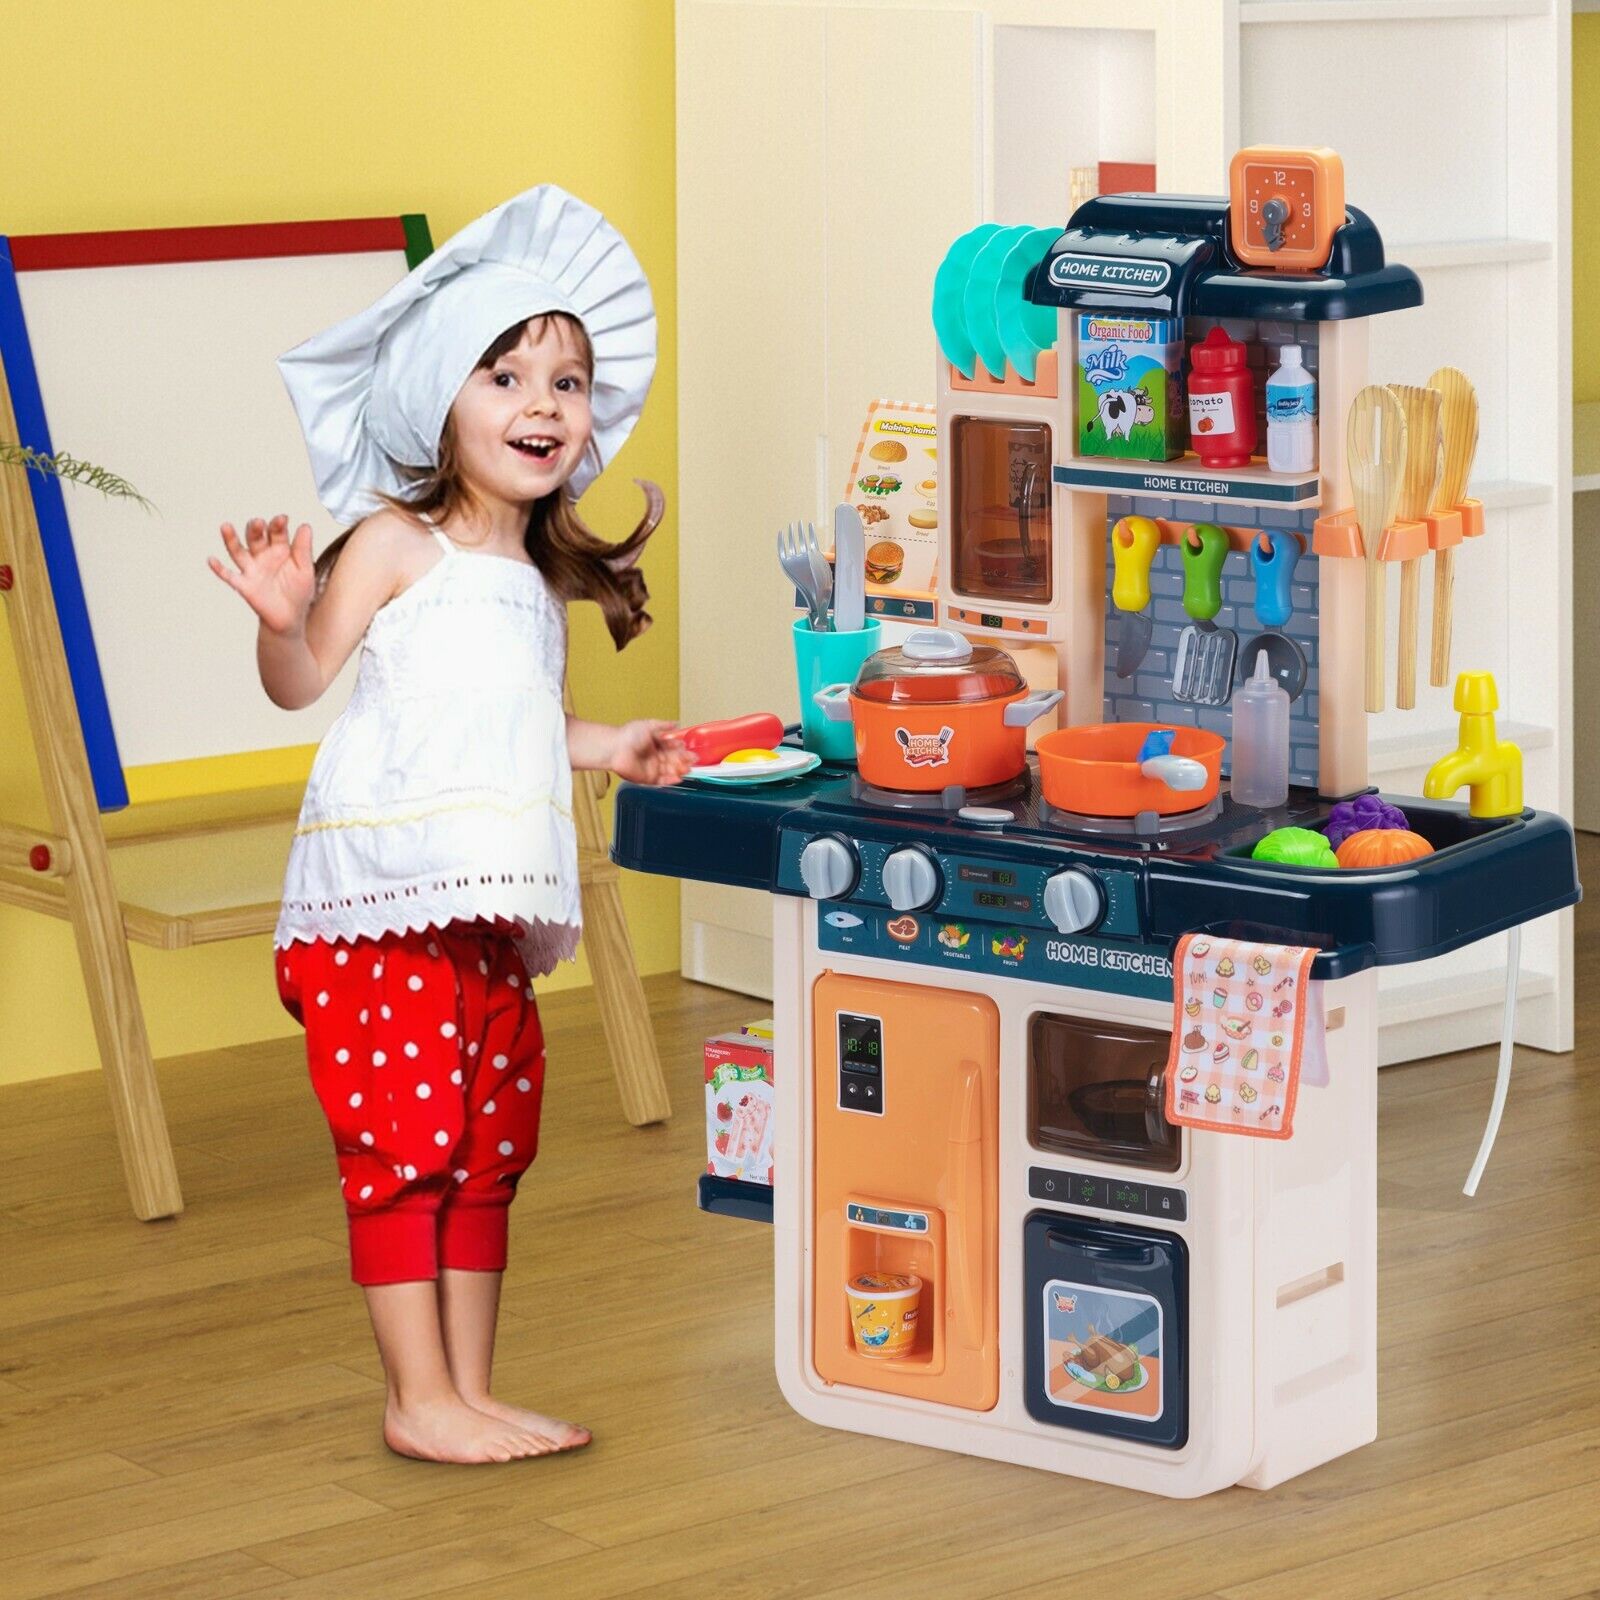 KidKraft Play Kitchen Accessories